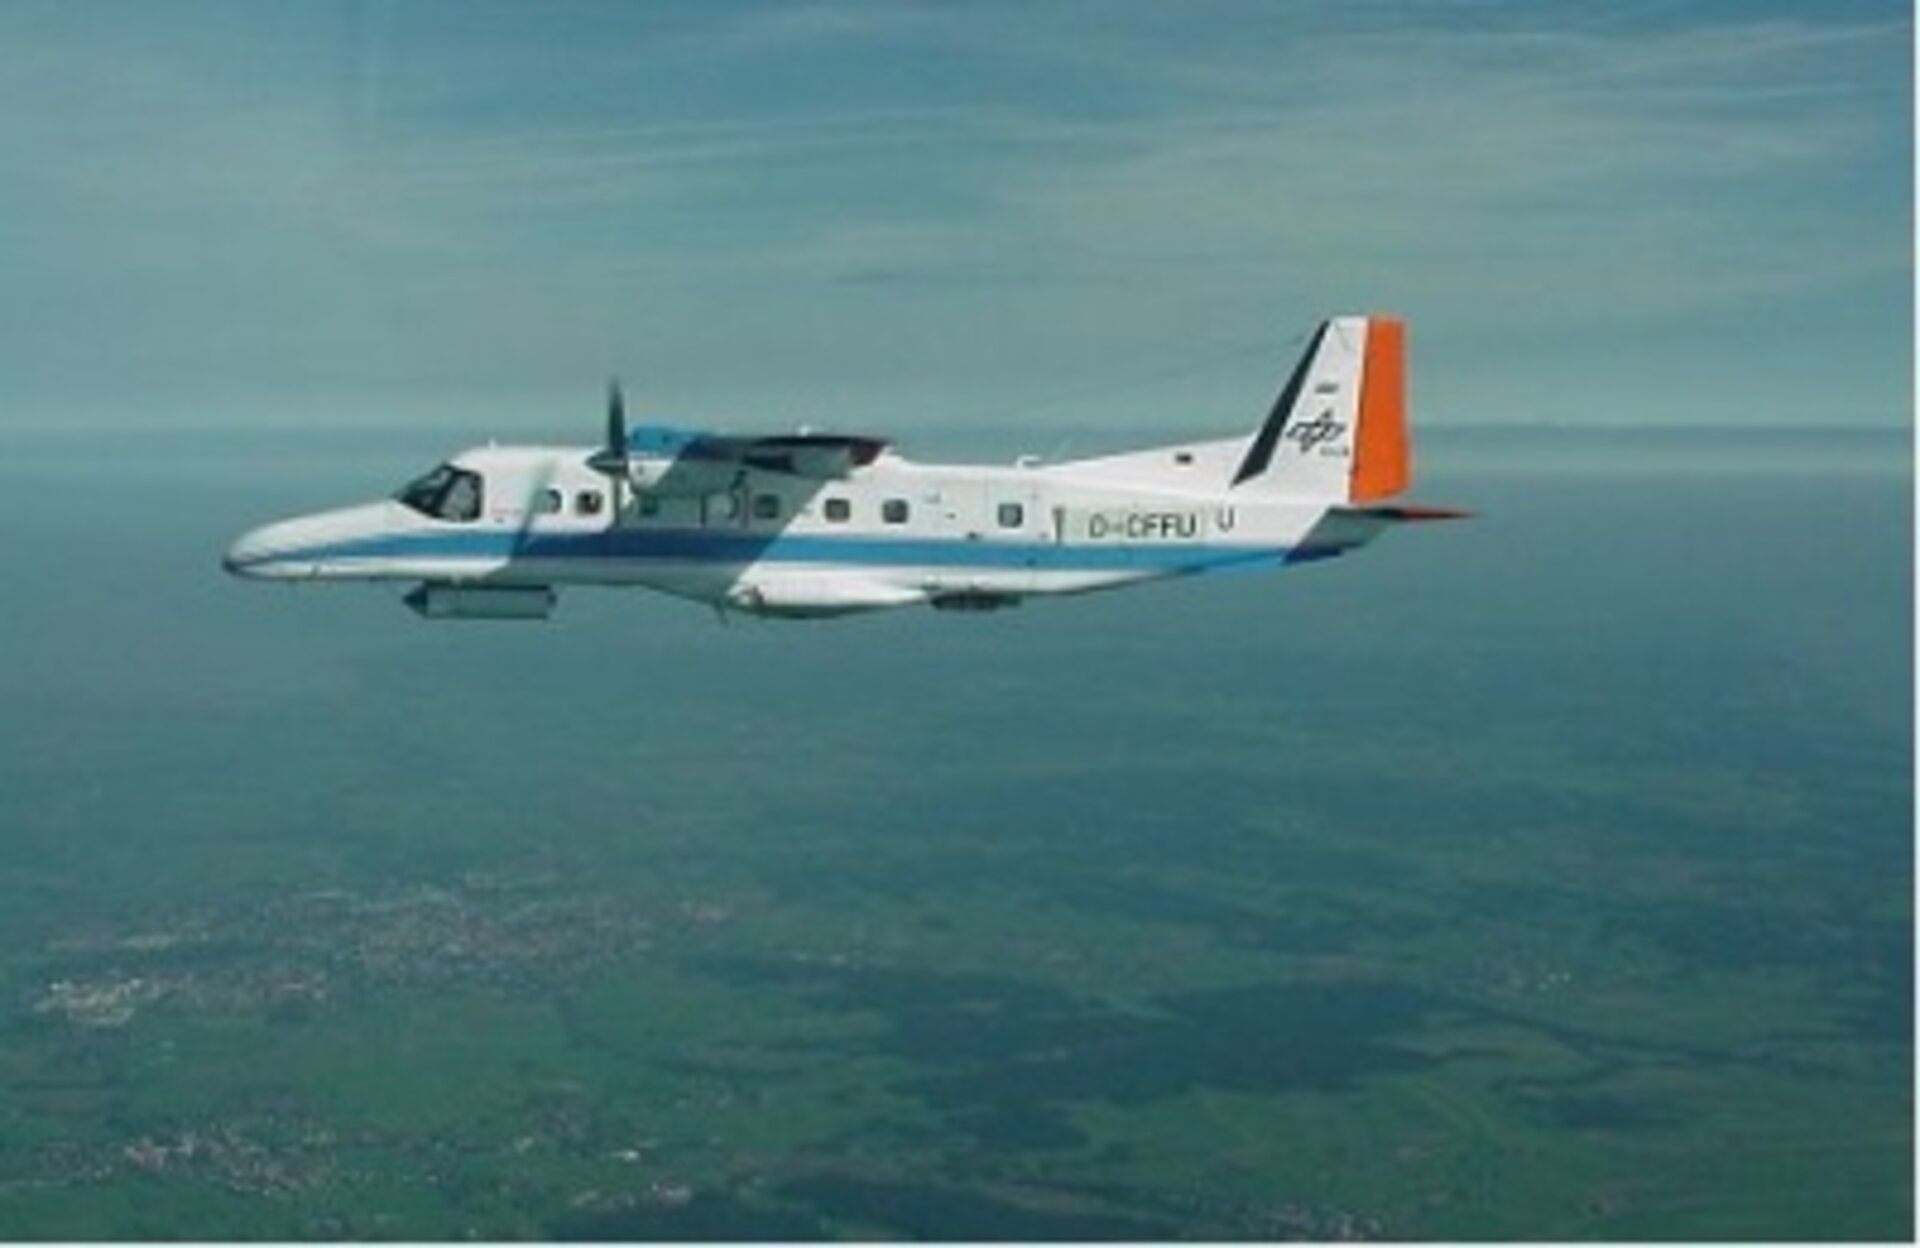 Aircraft carrying INDREX-2 radar equipment